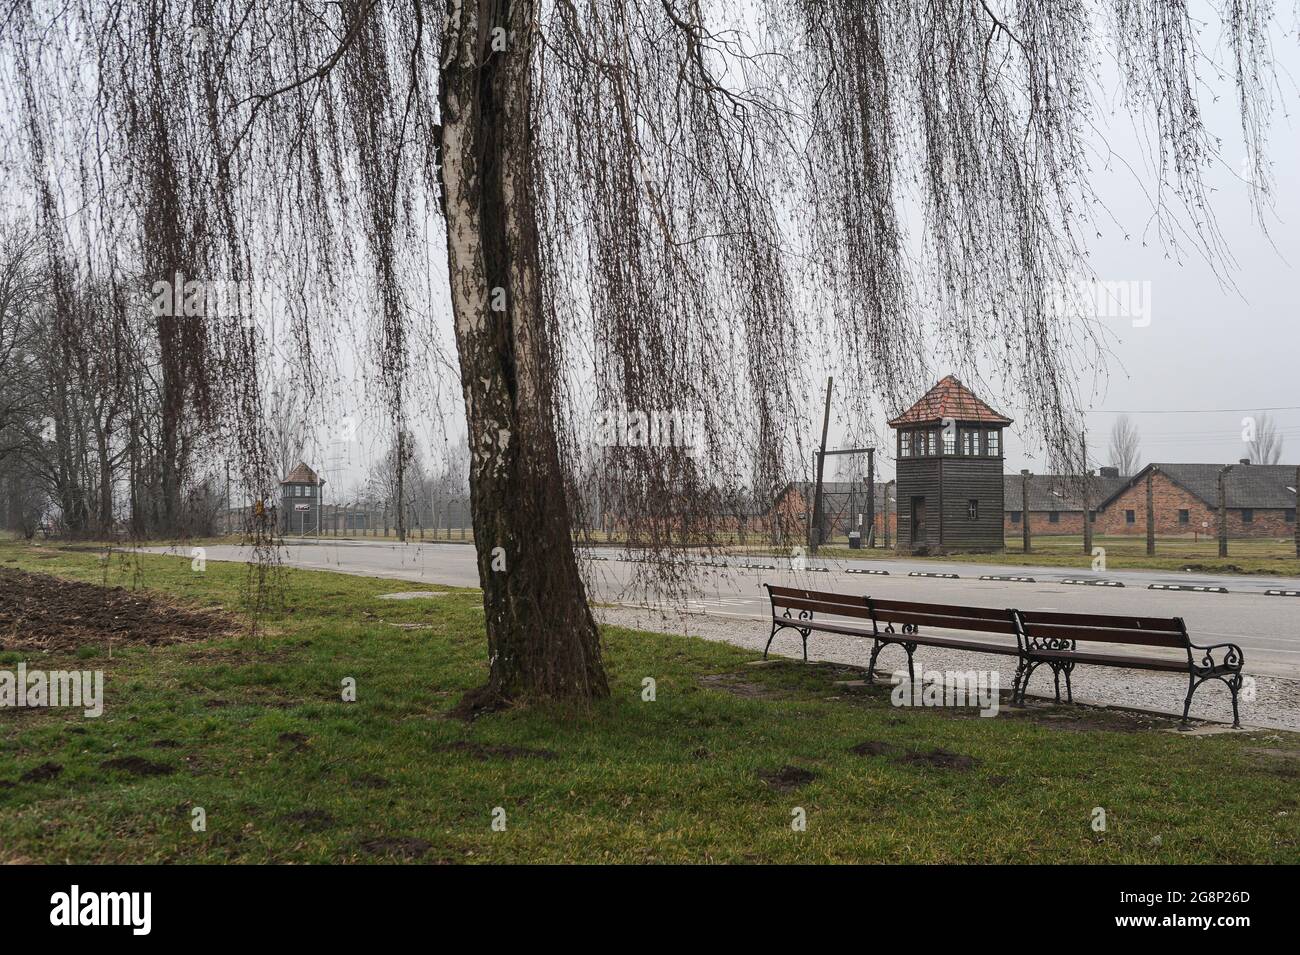 16.03.2015, Auschwitz, Polonia minore, Polonia, Europa - Vista dall'esterno dell'ex campo di concentramento di Auschwitz II a Birkenau da una recinzione circondata. Foto Stock